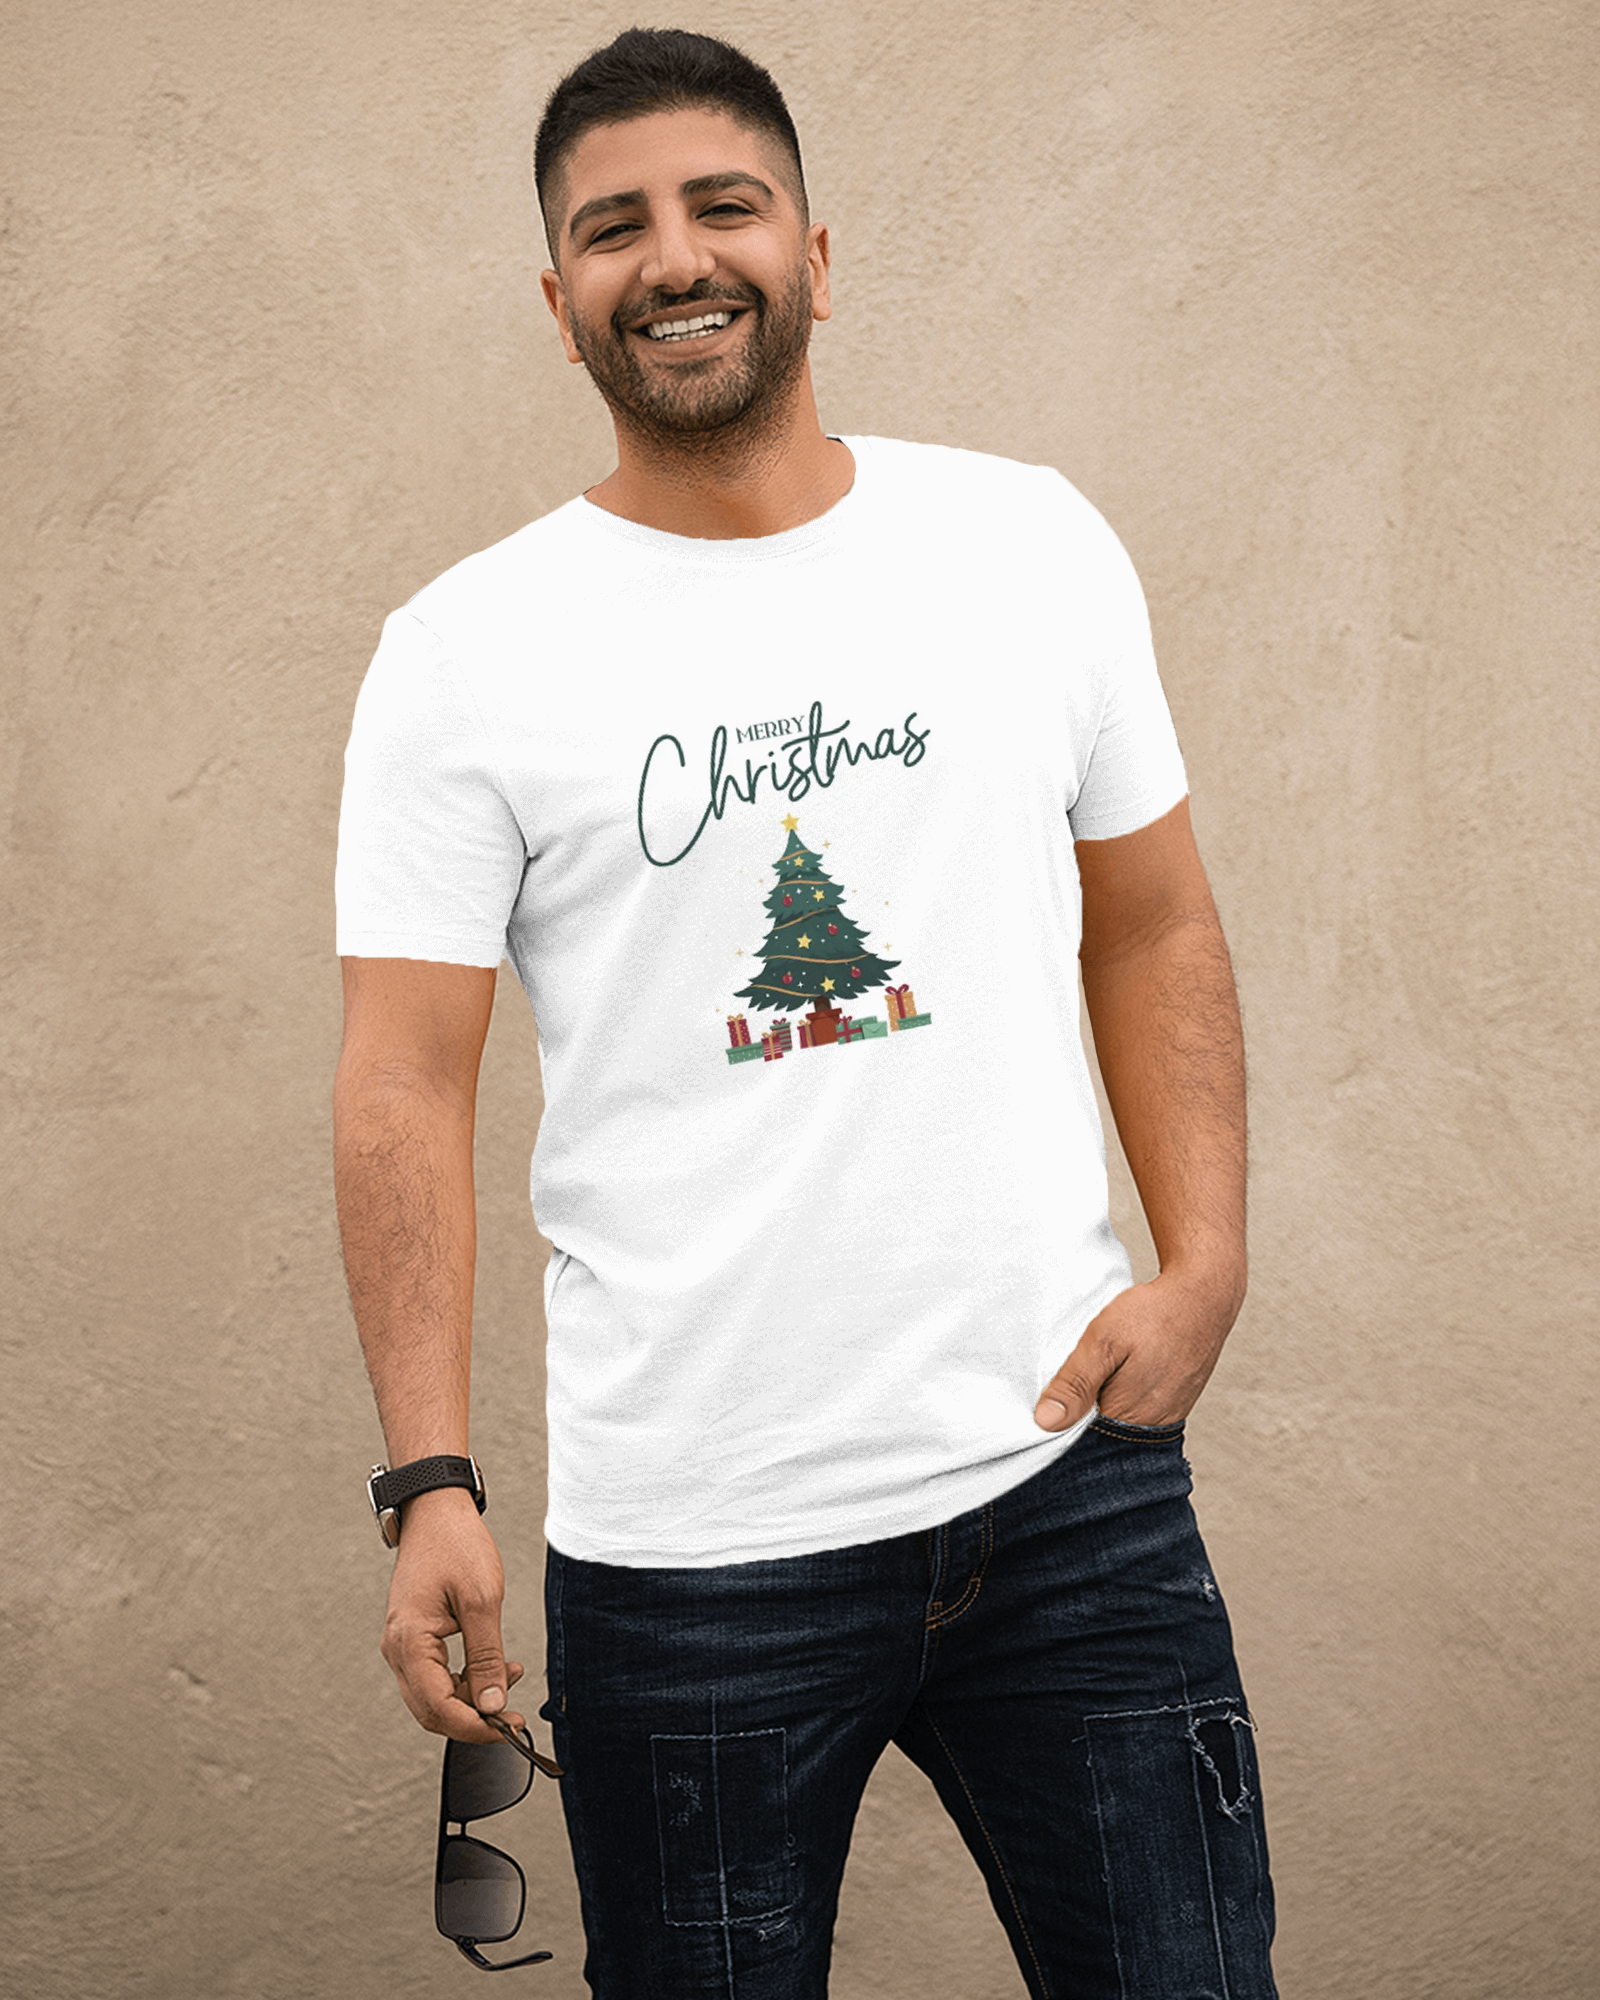 T-Shirts for Christmas Holiday Mood